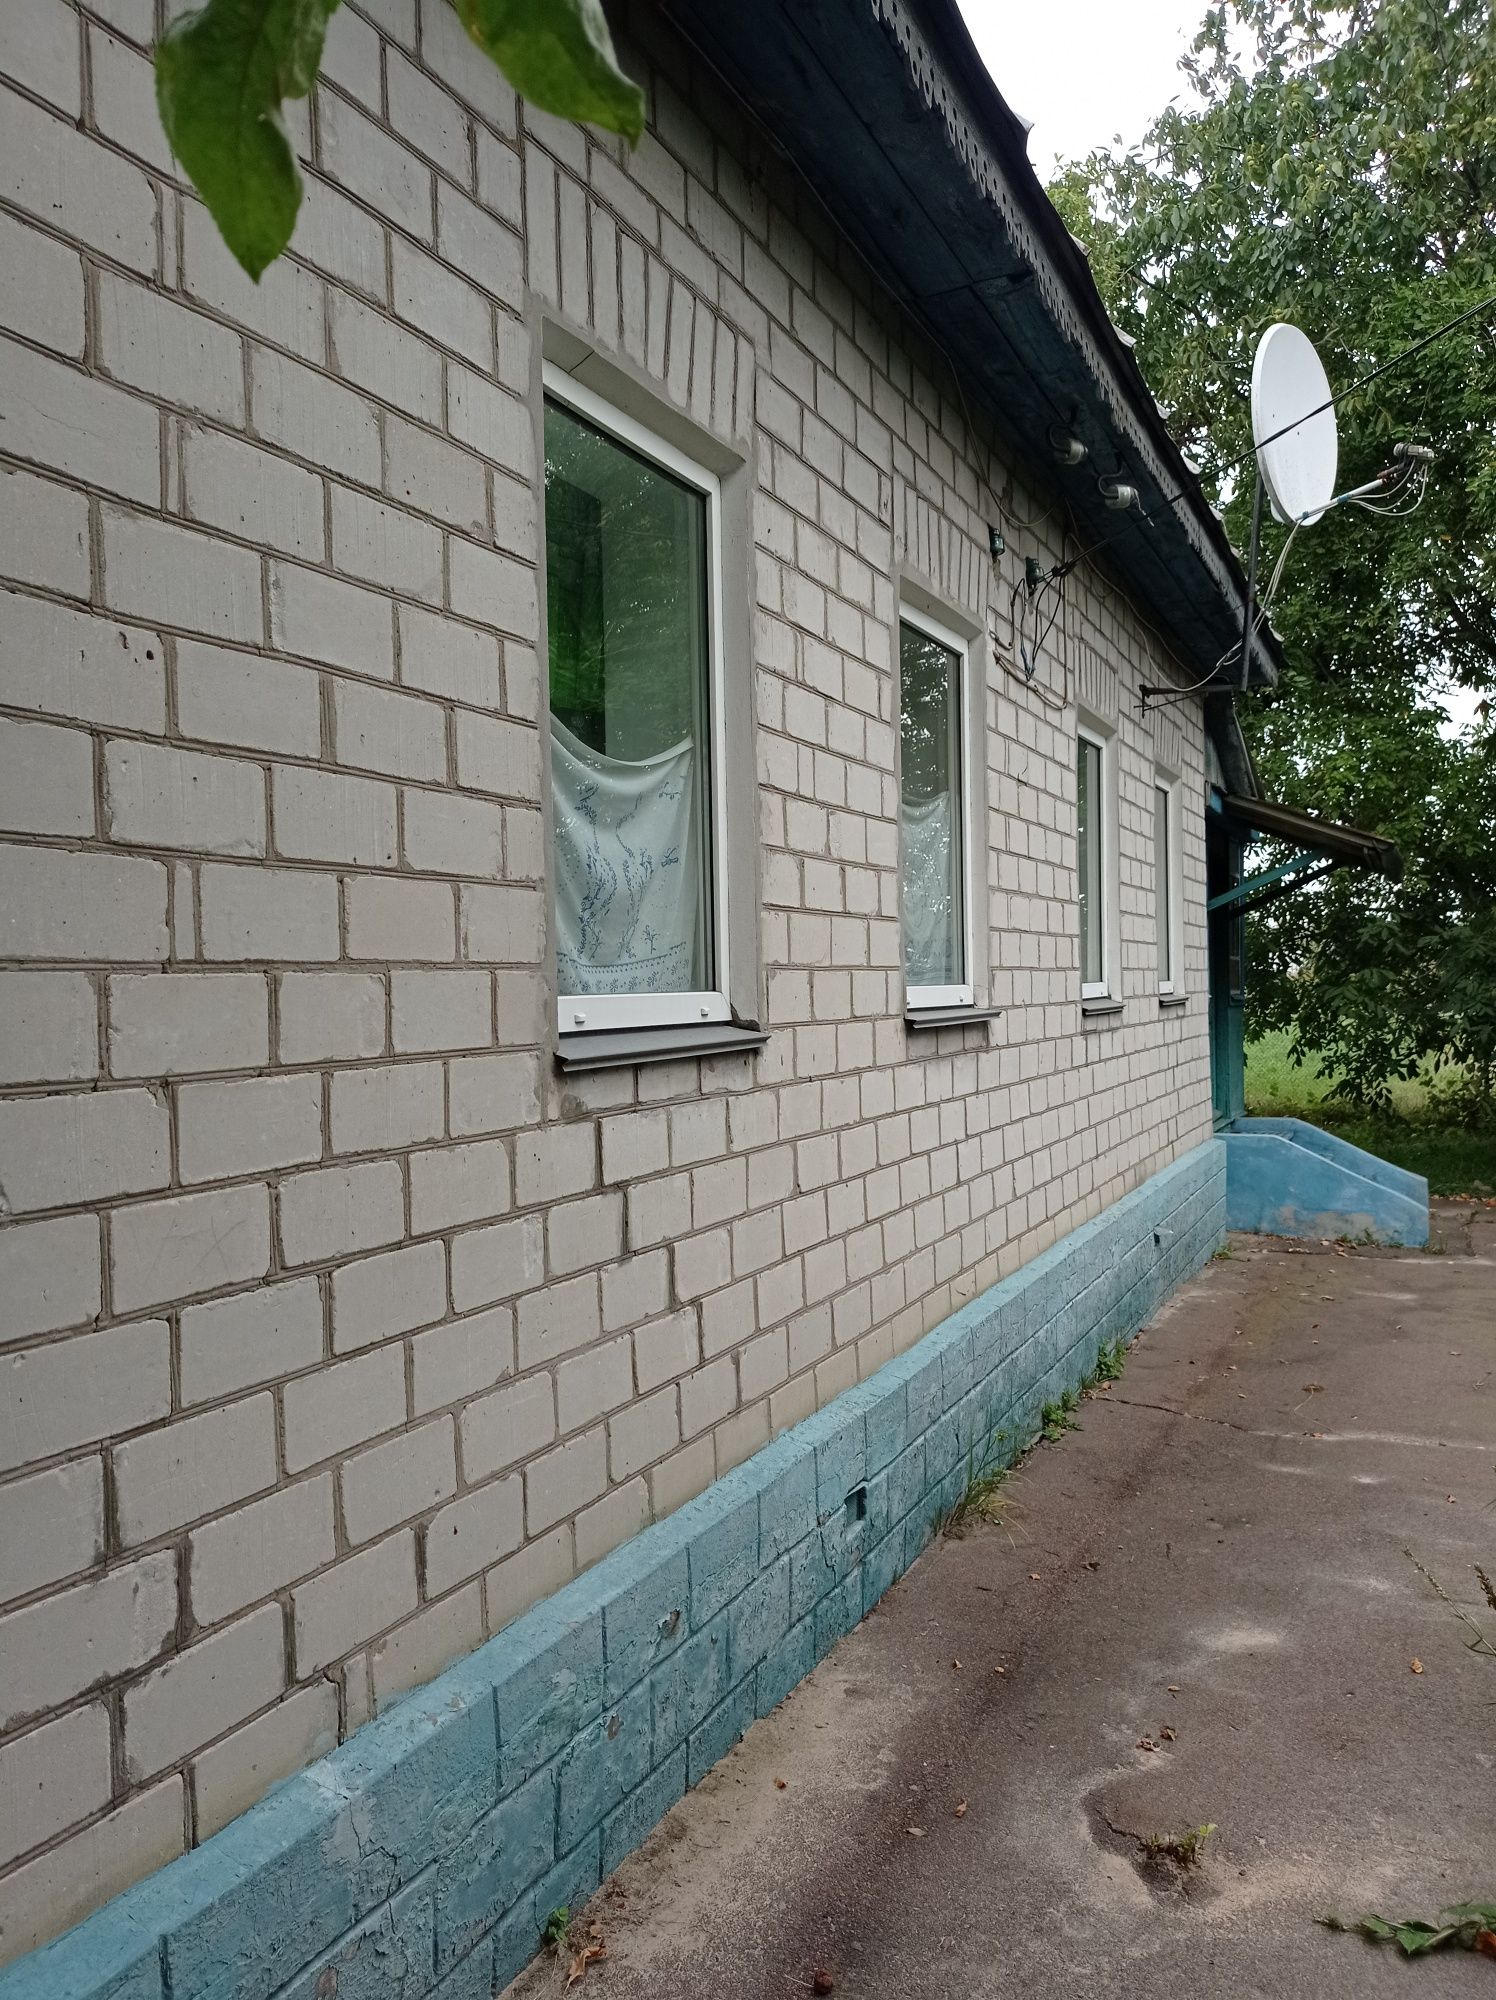 Кирпичный дом в 100км от КИЕВА.  Трасса Чернигов -Киев. Село Прогрес.